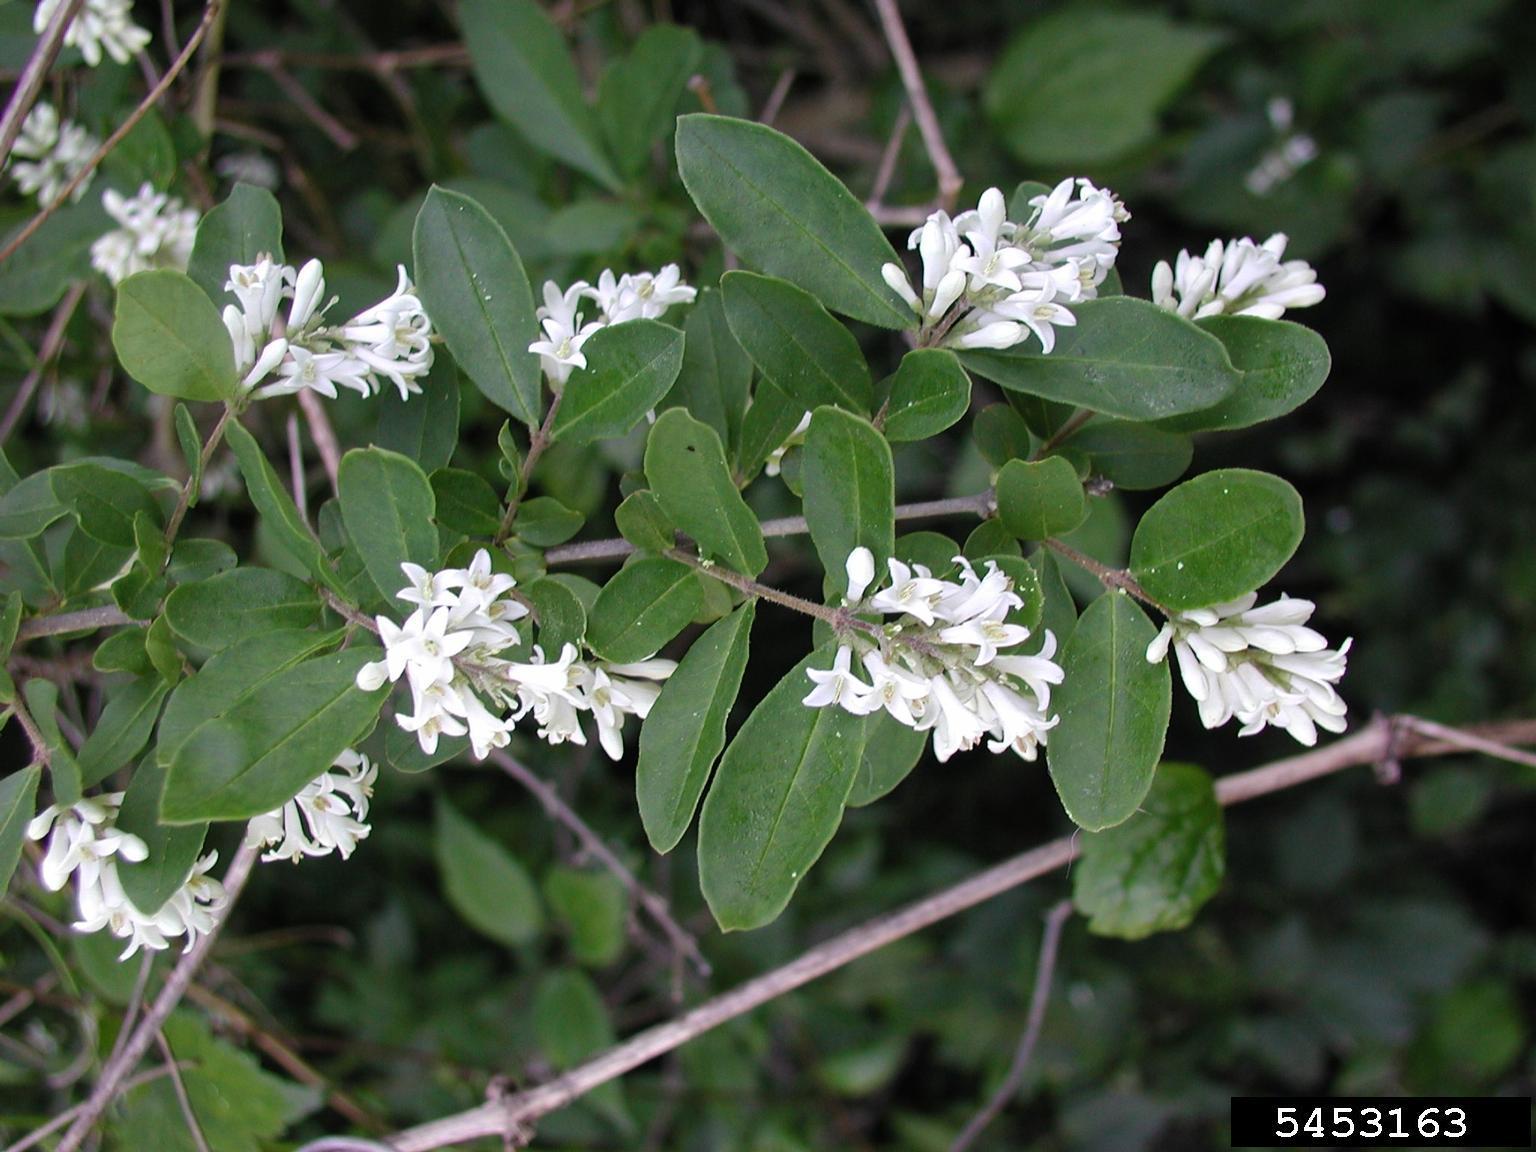 border privet shrub with white flowers